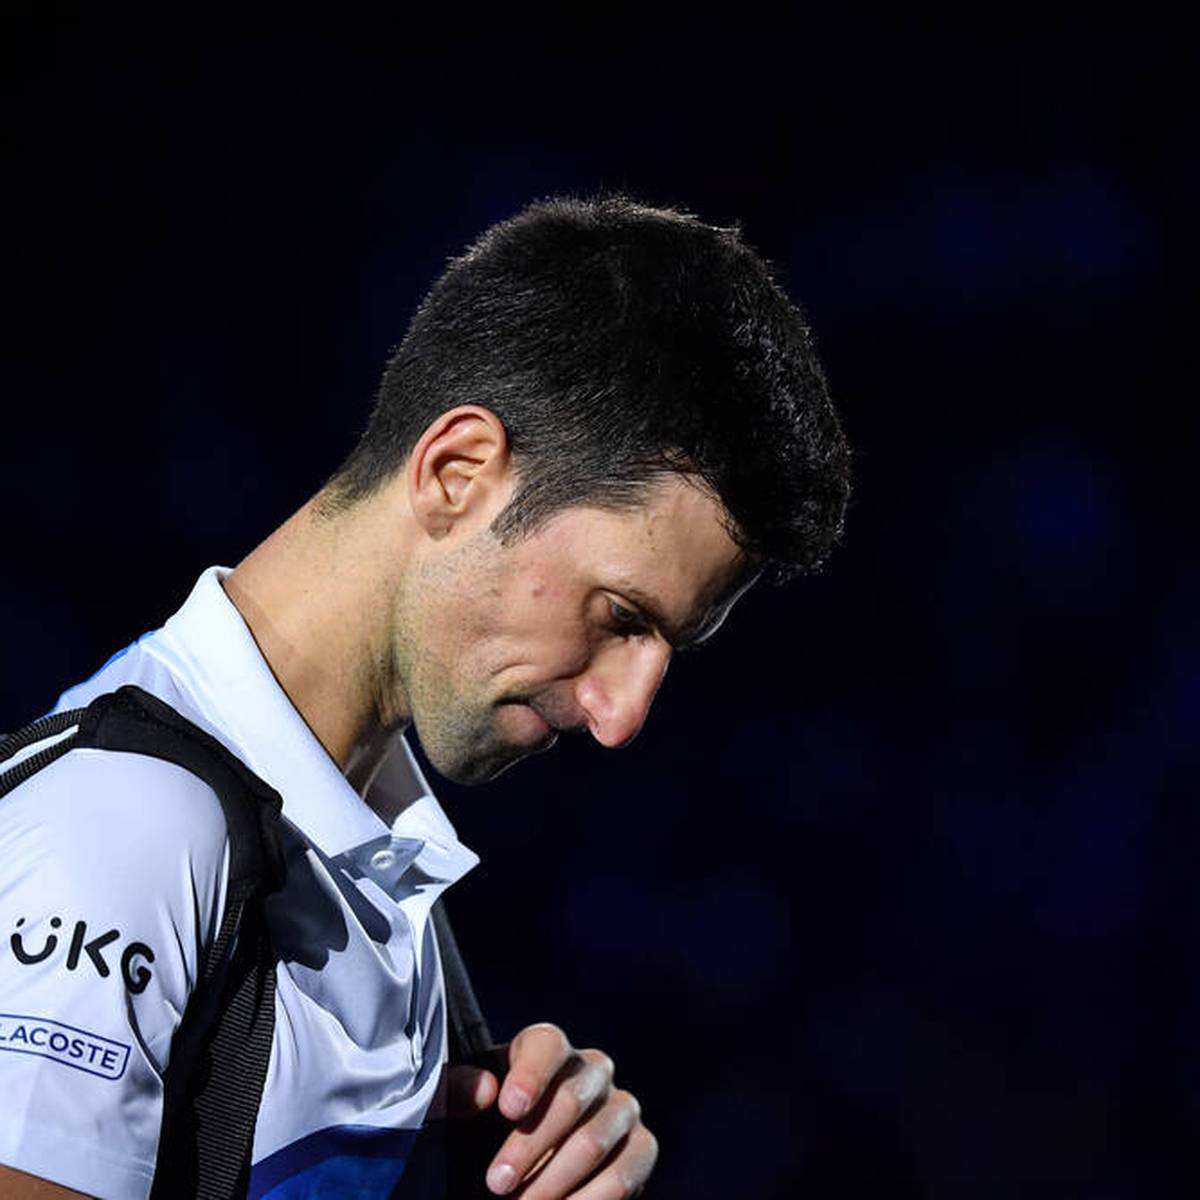 Novak Djokovic ist nach Serbien zurückgekehrt. Nach dem Drama vor den Australian Open droht dem Star nun eine Saison ohne Grand Slam. Im GOAT-Rennen wäre dies ein herber Rückschlag.